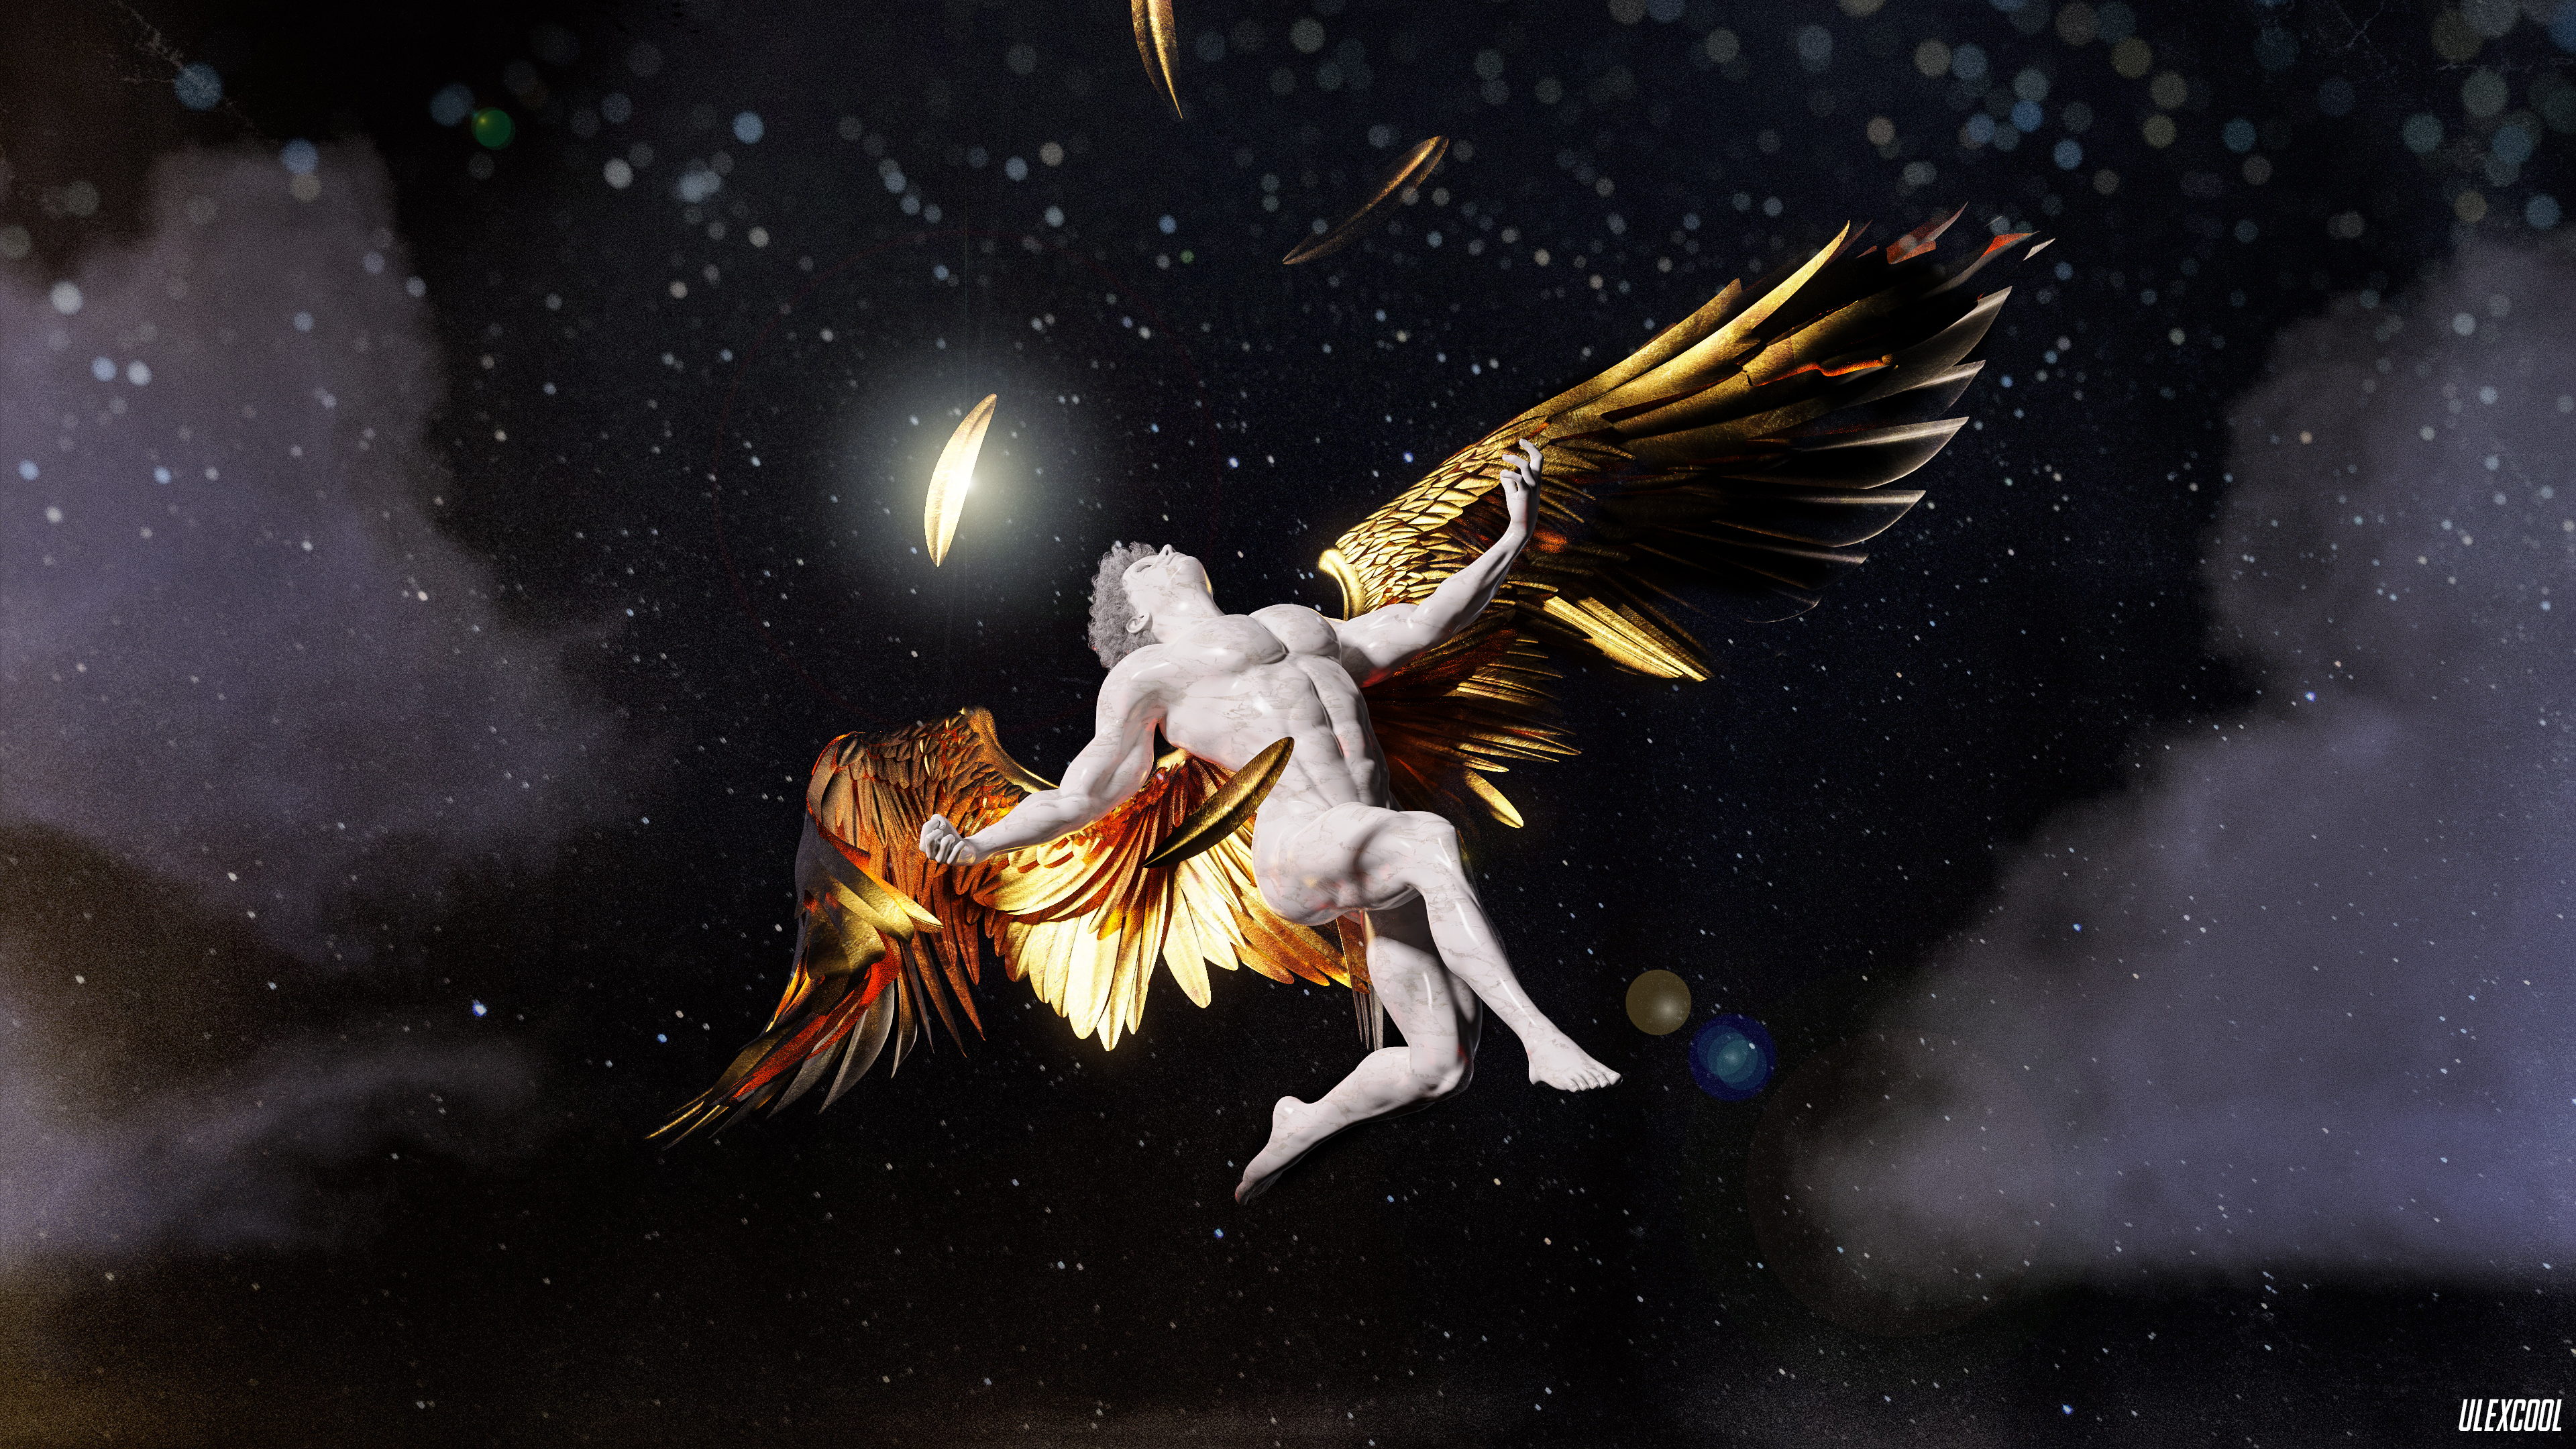 Greek Mythology Greek Mythology Ancient Greek Sculpture Sculpture Marble Gold Stars CGi Digital Art  3840x2160